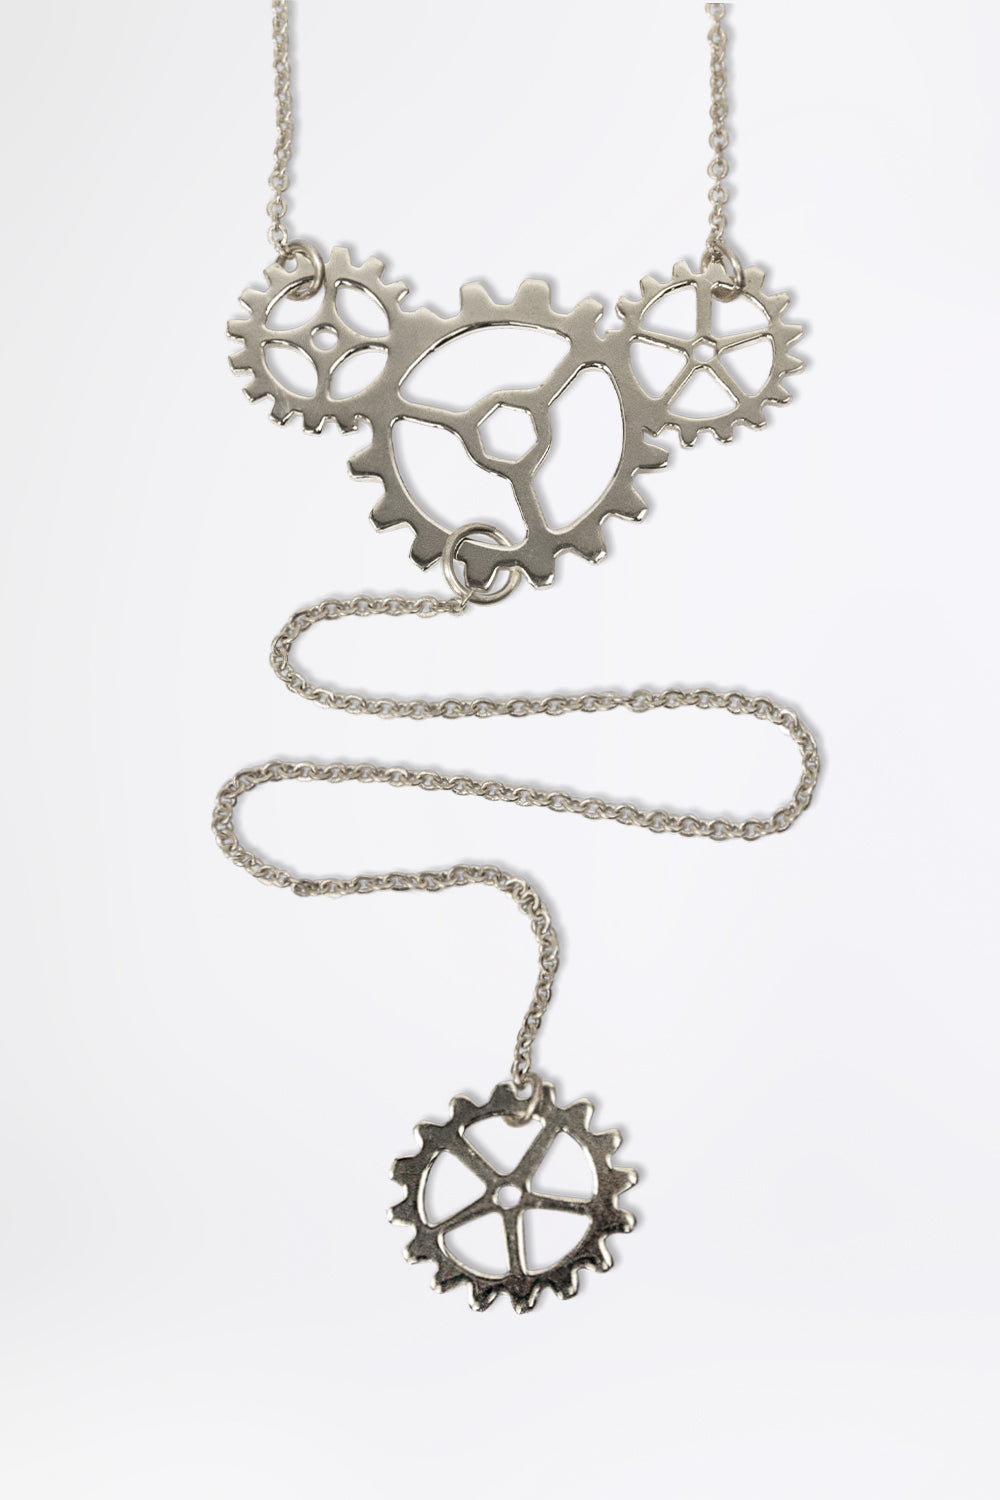 GEARWHEEL - Long Single Silver Necklace